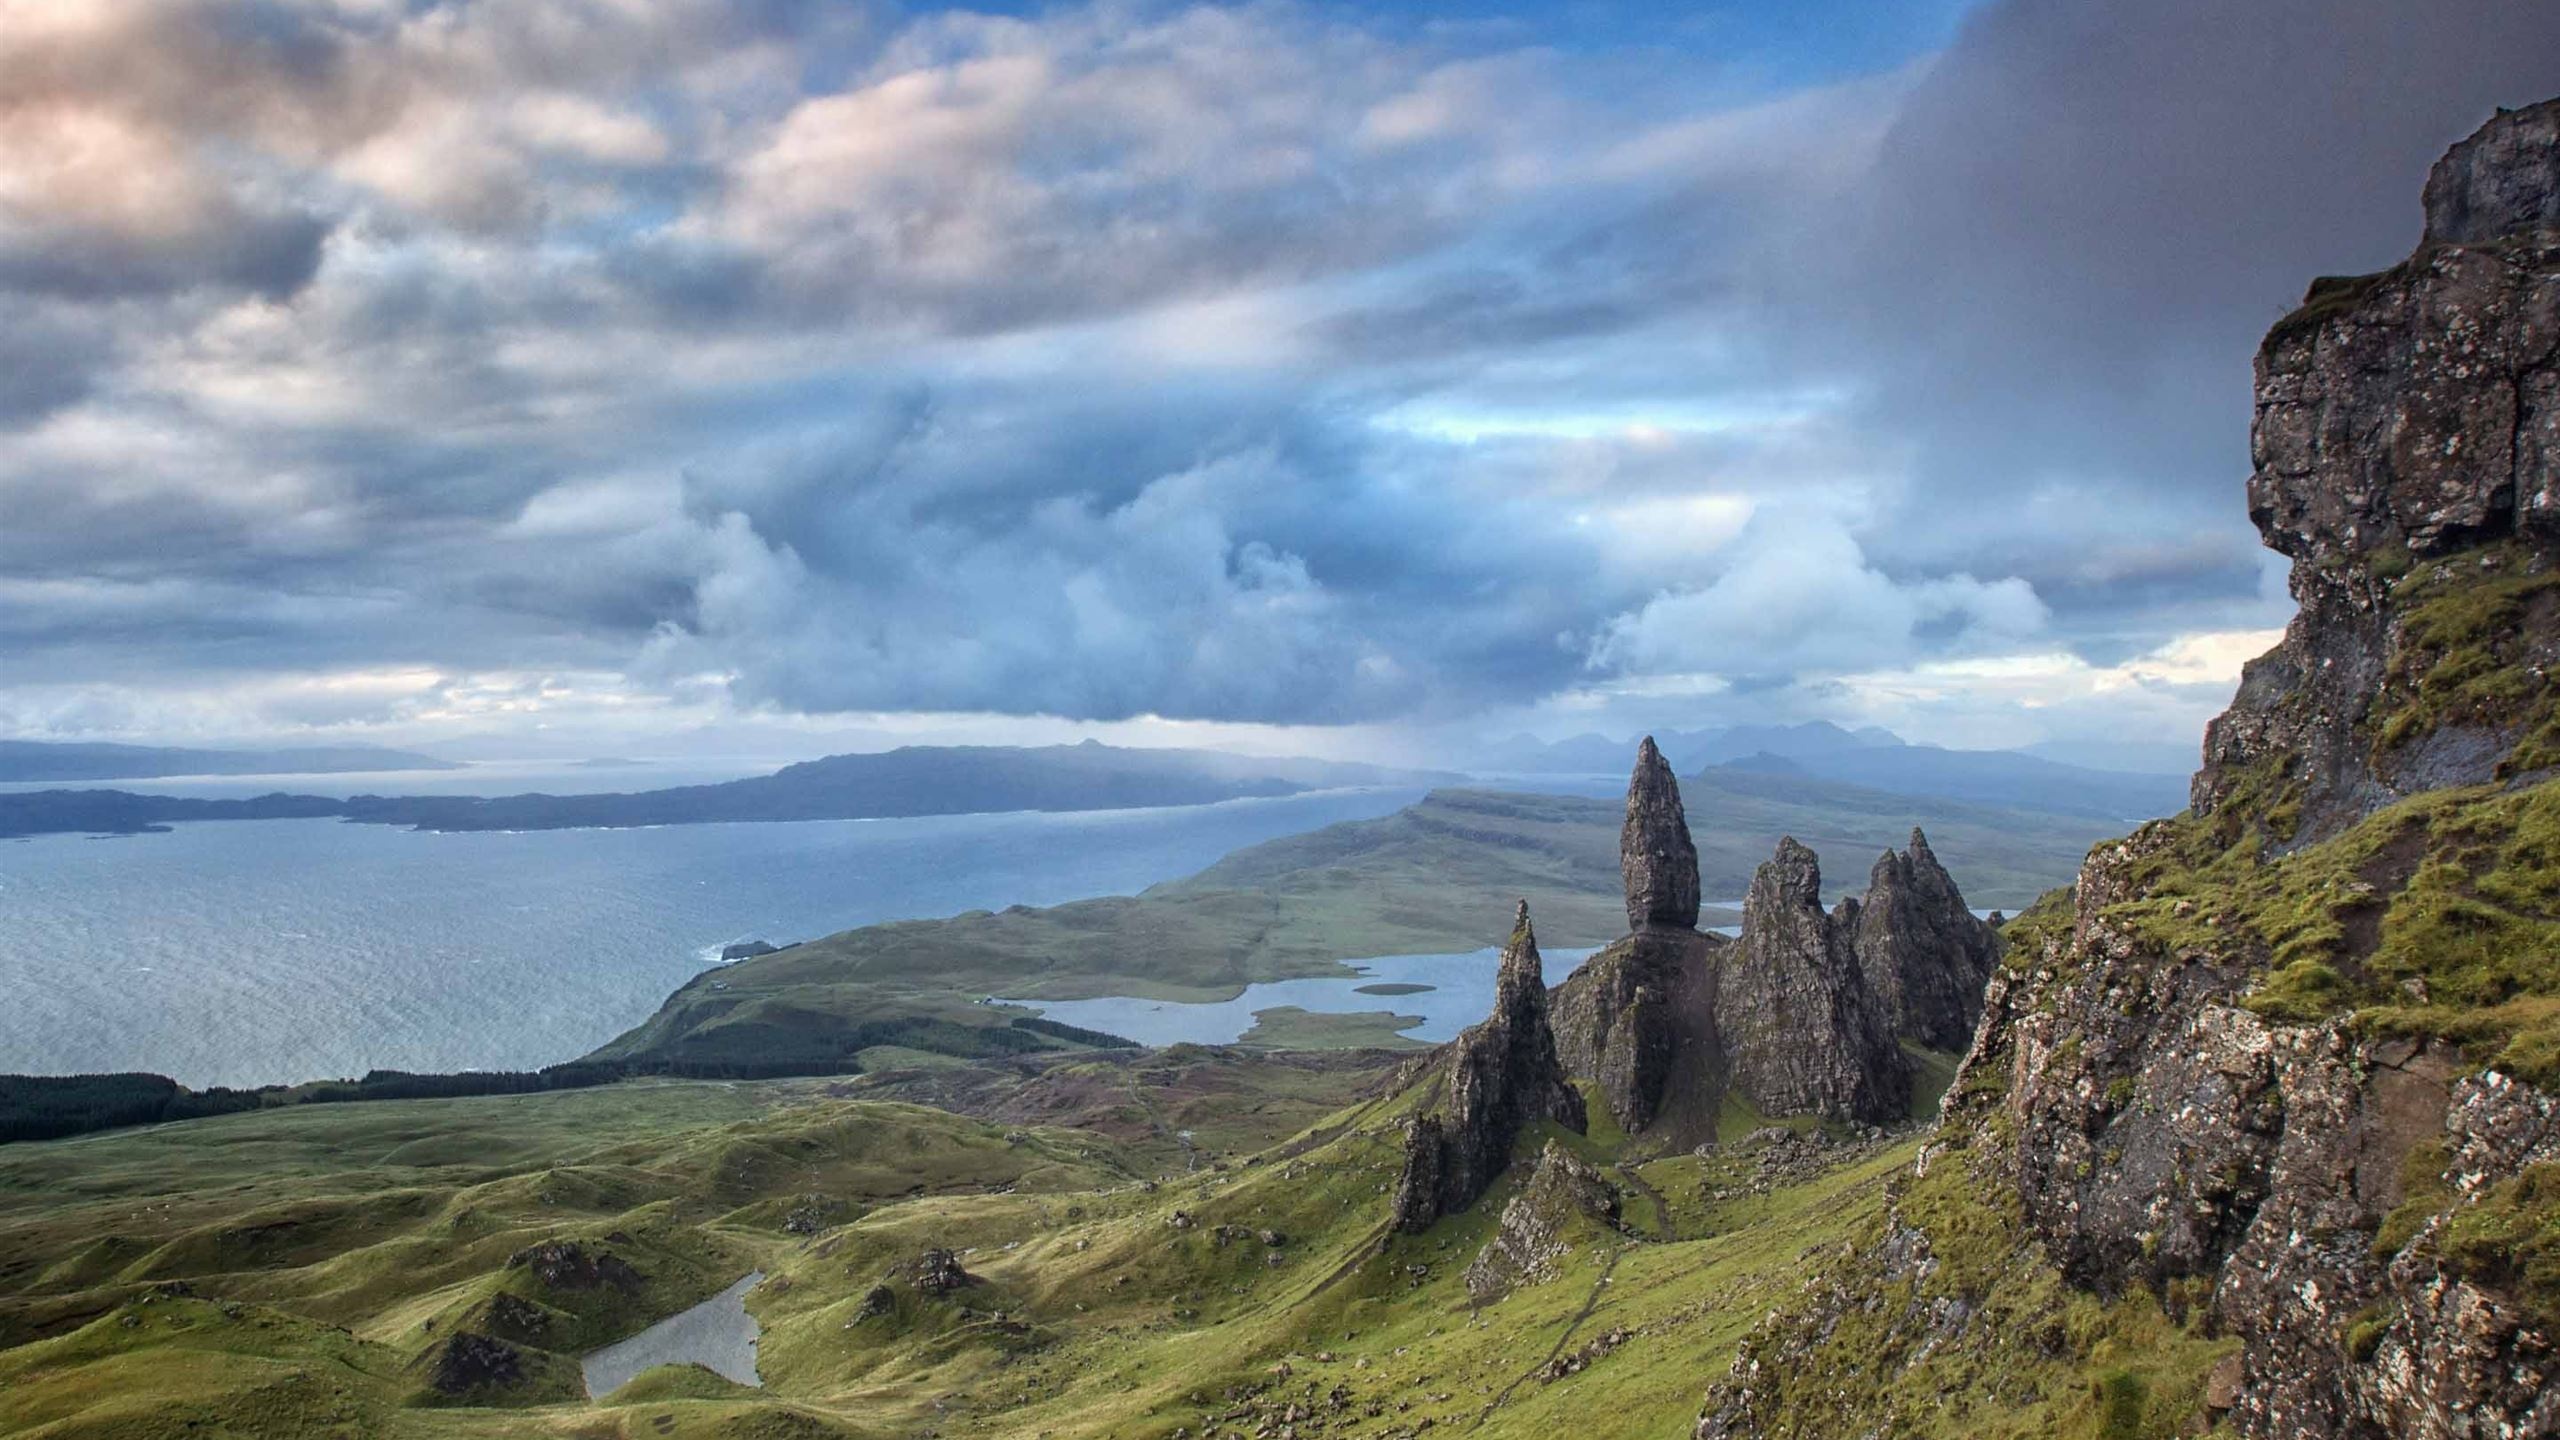 Skye island, Scotland MacBook Air, 2560x1440 HD Desktop